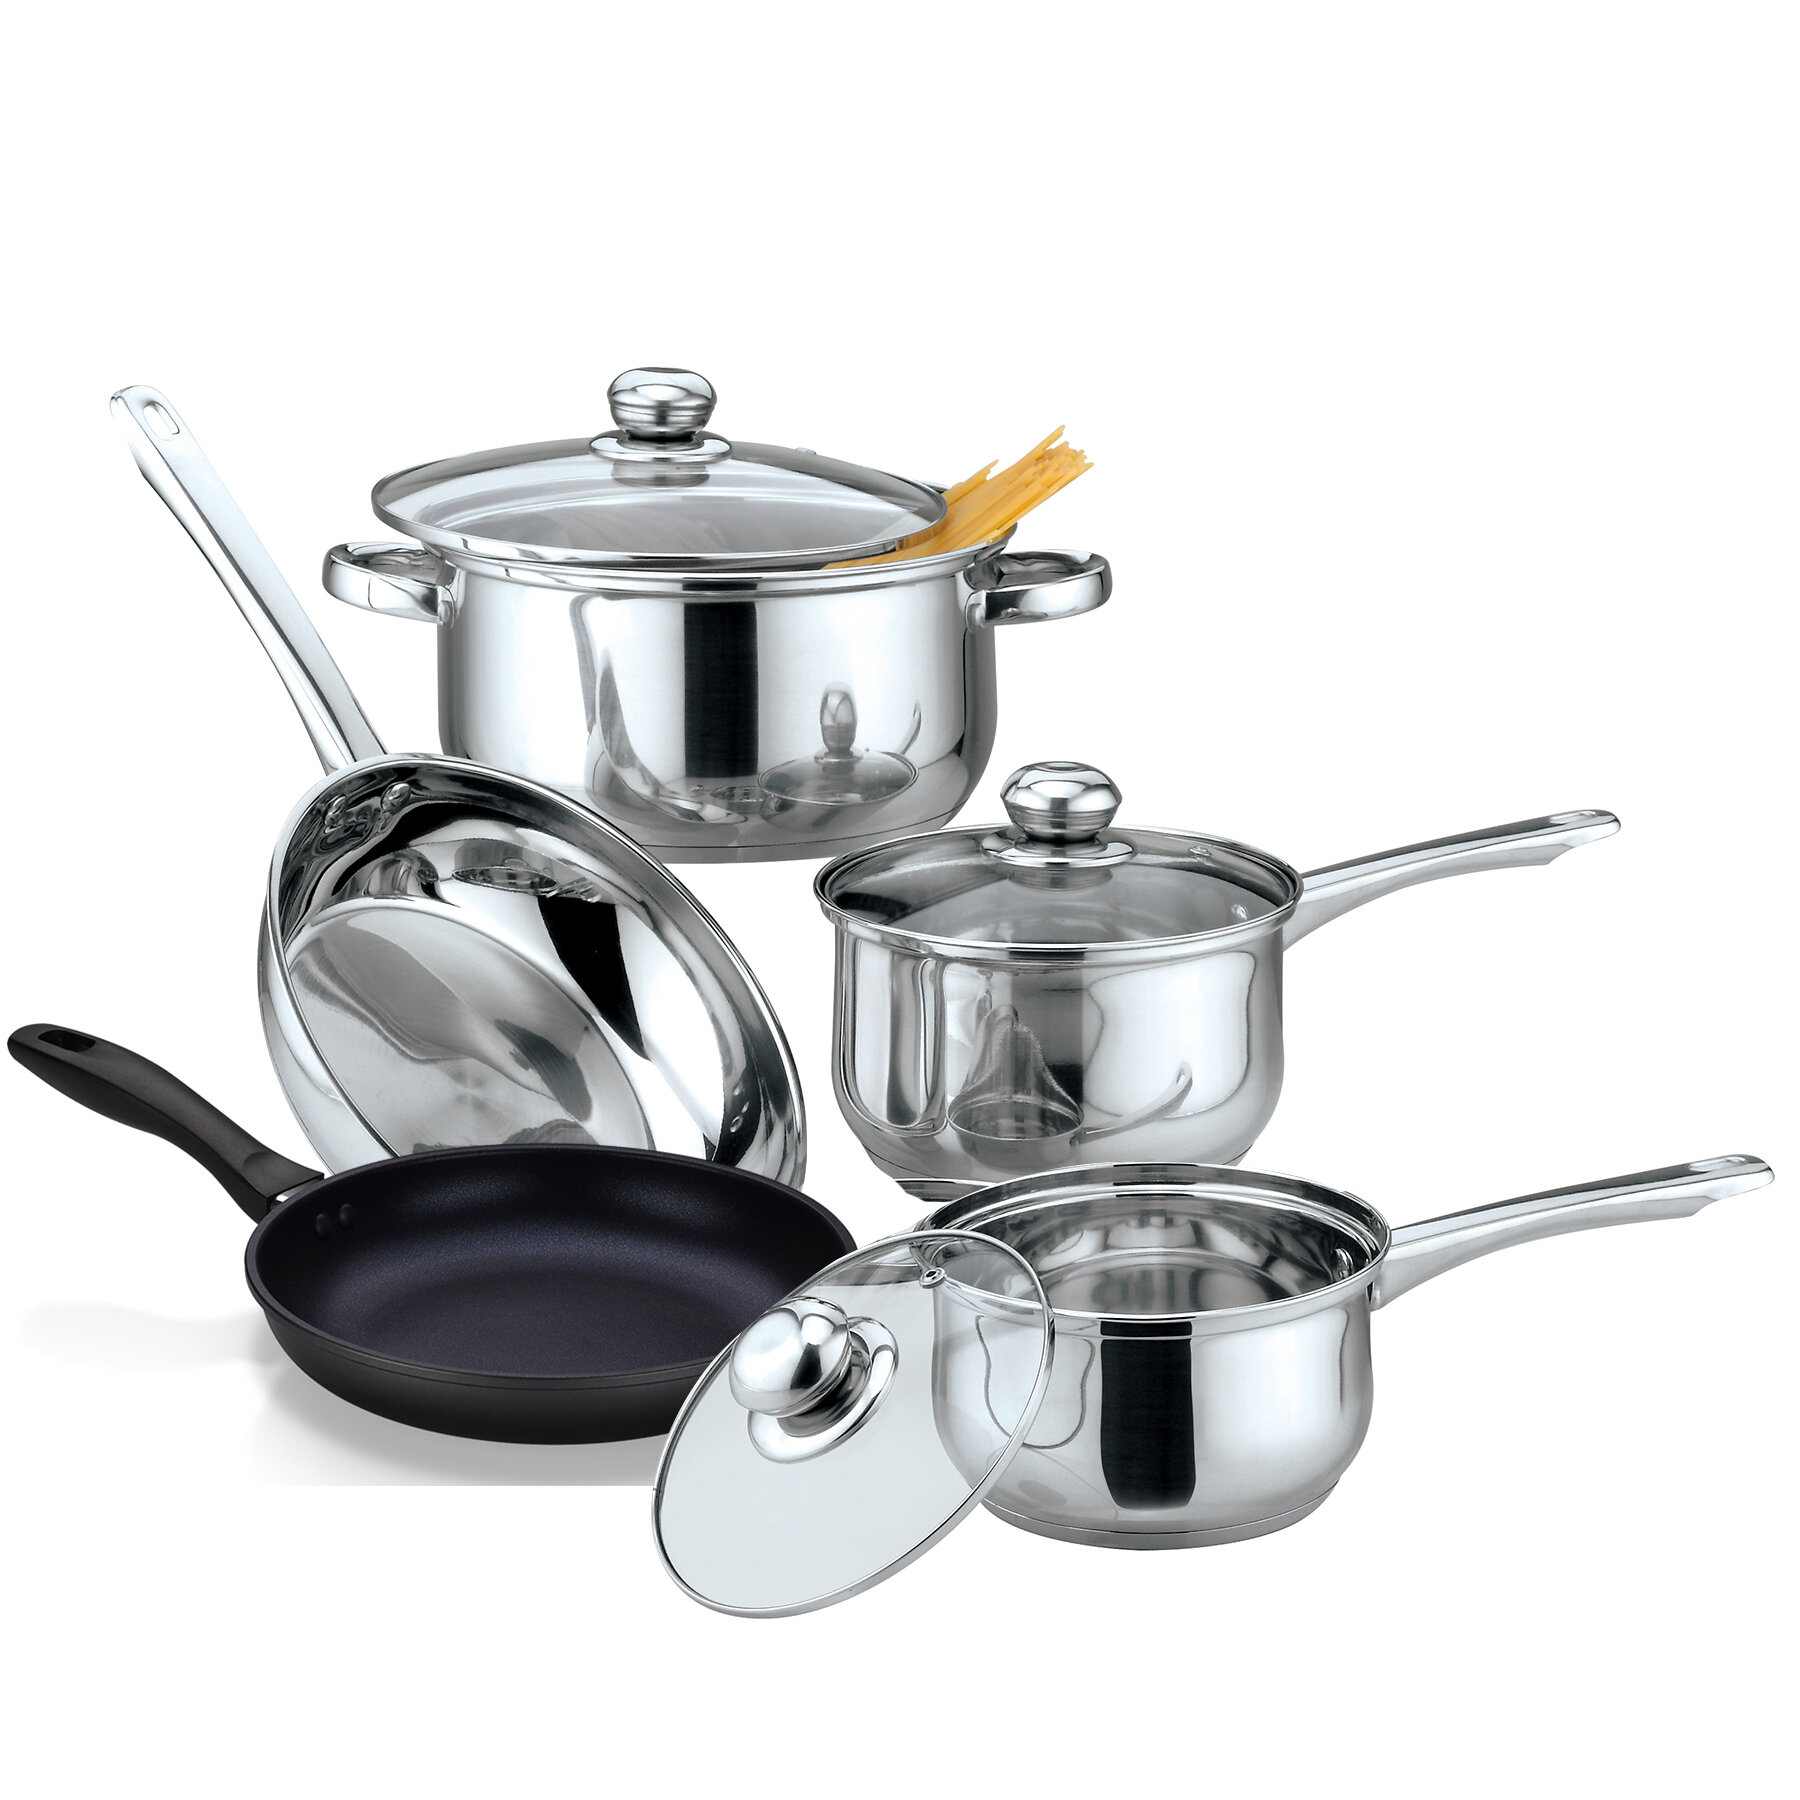 https://assets.wfcdn.com/im/19895704/compr-r85/1504/150411990/8-piece-non-stick-stainless-steel-cookware-set.jpg